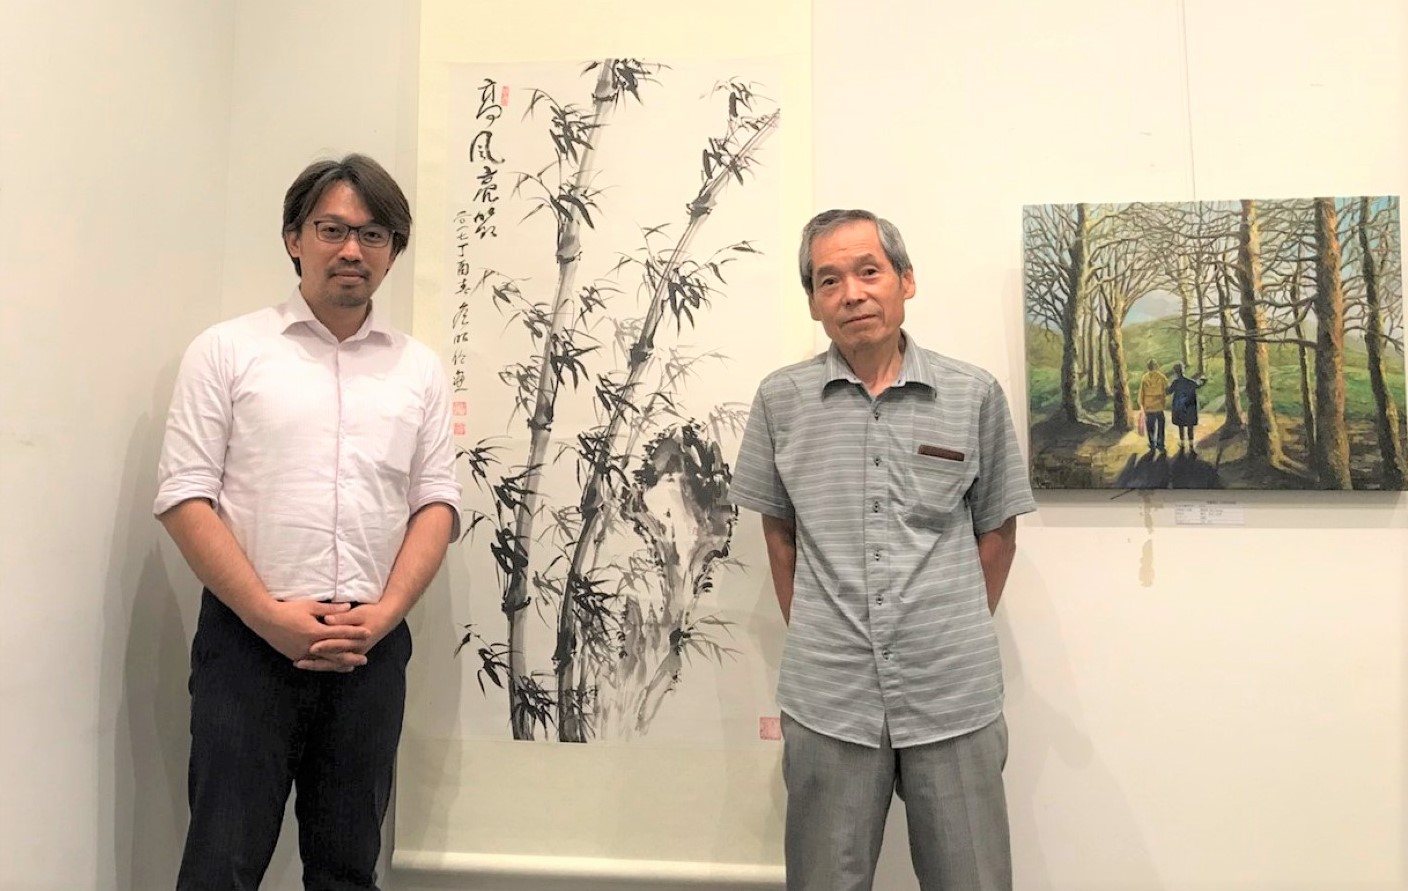 日本藝術評論家 鈴木健藏、日本奈良畫家 大森洋太郎先生等人